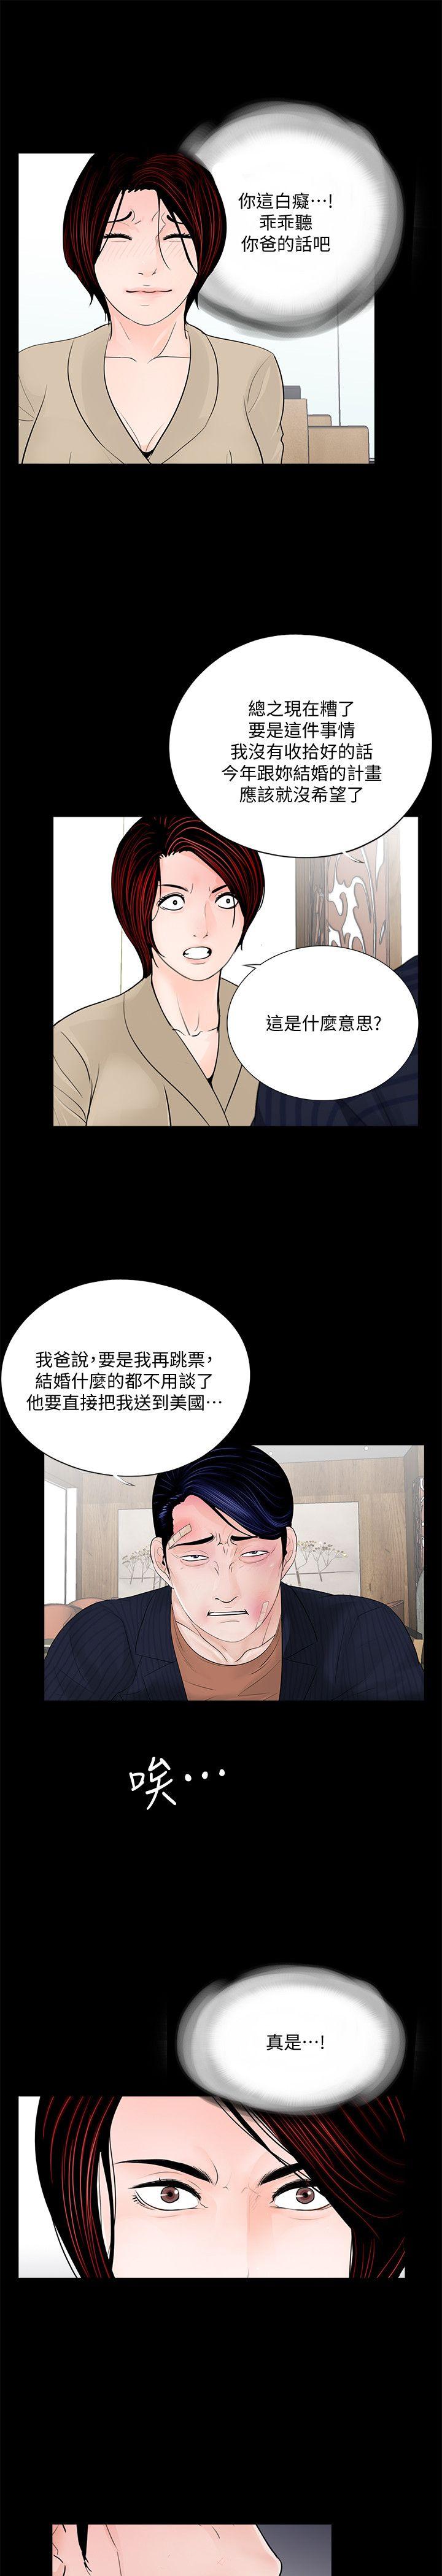 韩国污漫画 夢魘 第46话-真书的未婚夫(04) 9